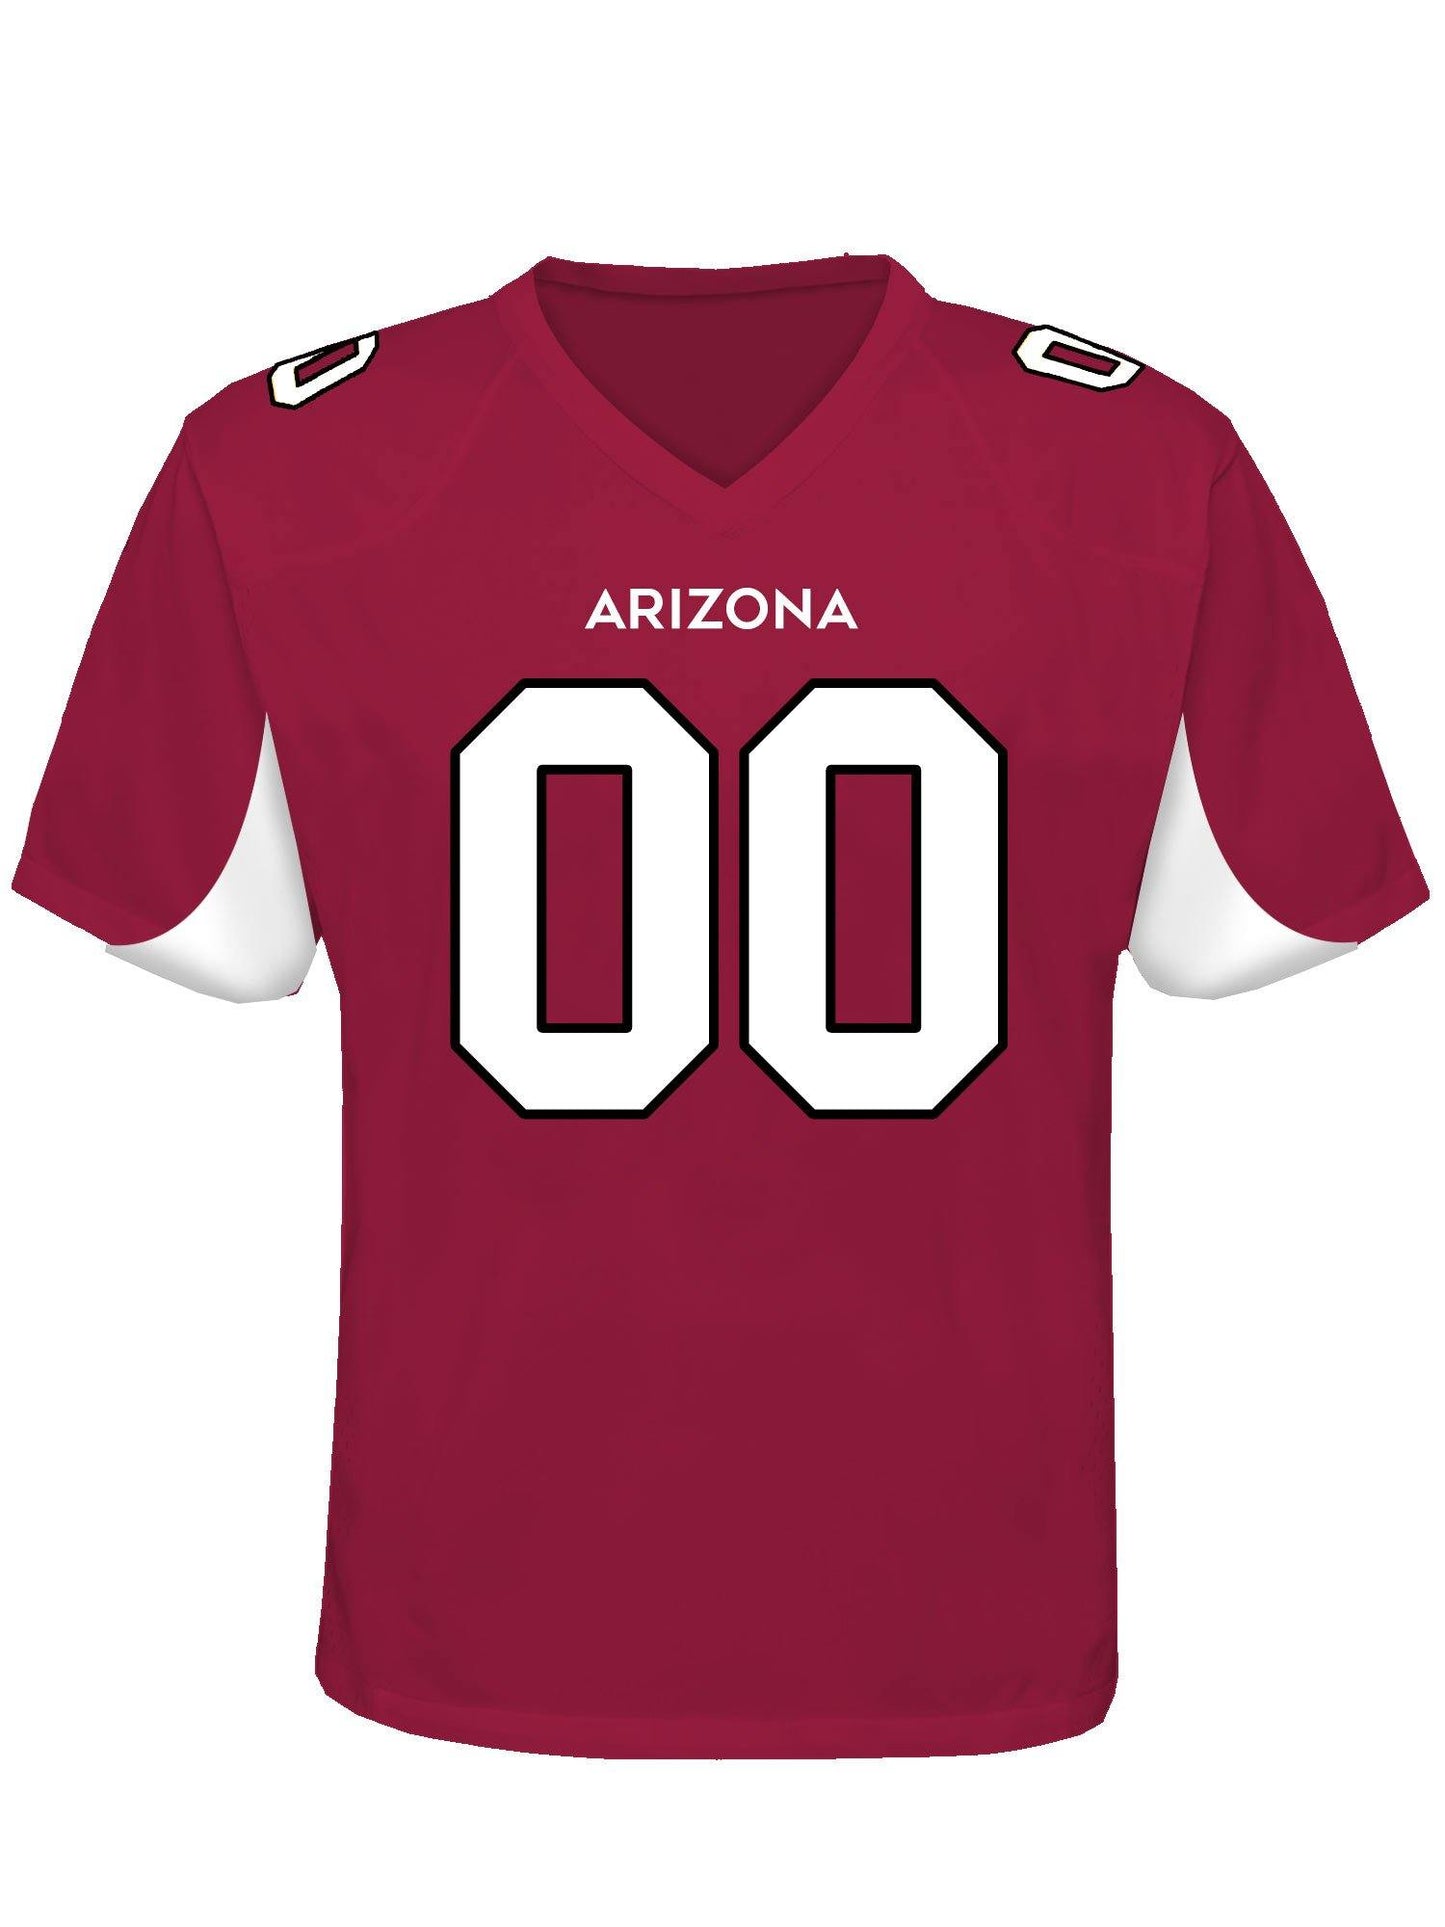 Arizona Custom Football Jersey - USA Made Dropship